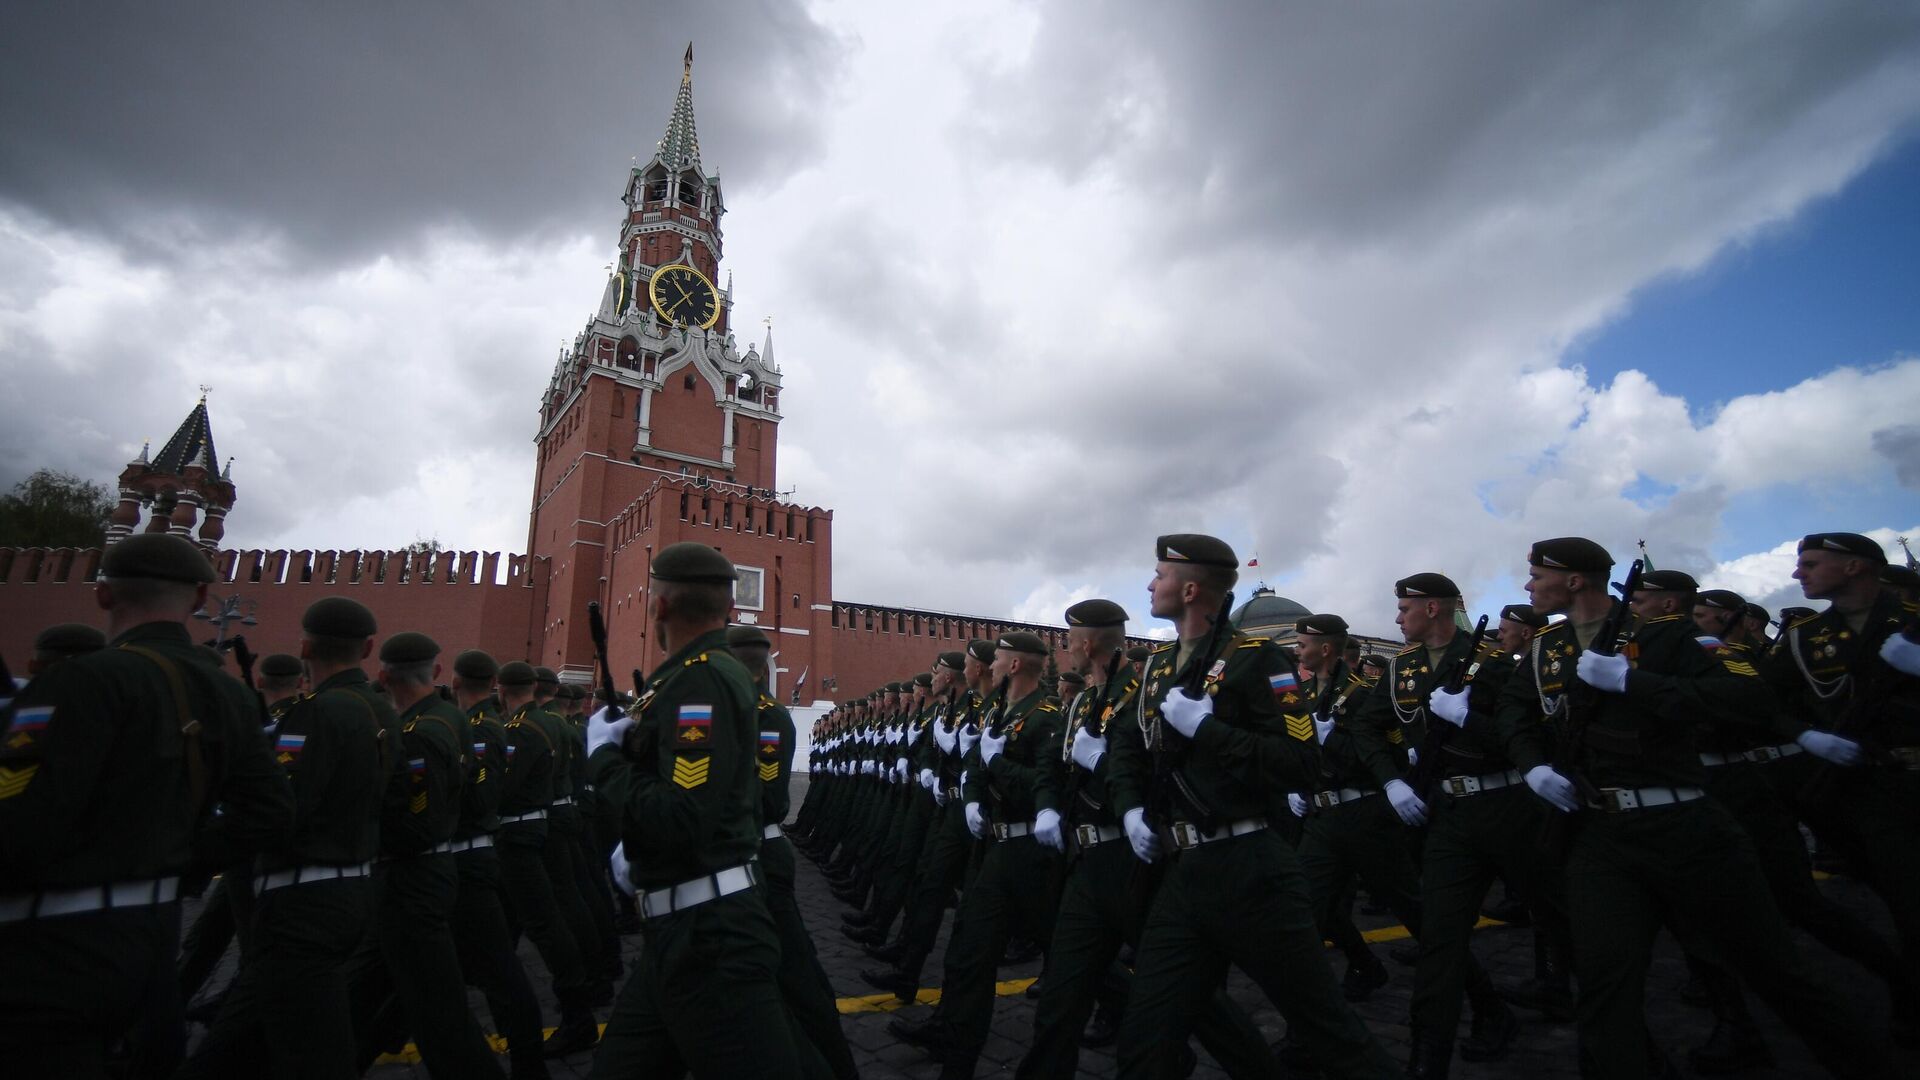 Военный парад на красной площади в москве